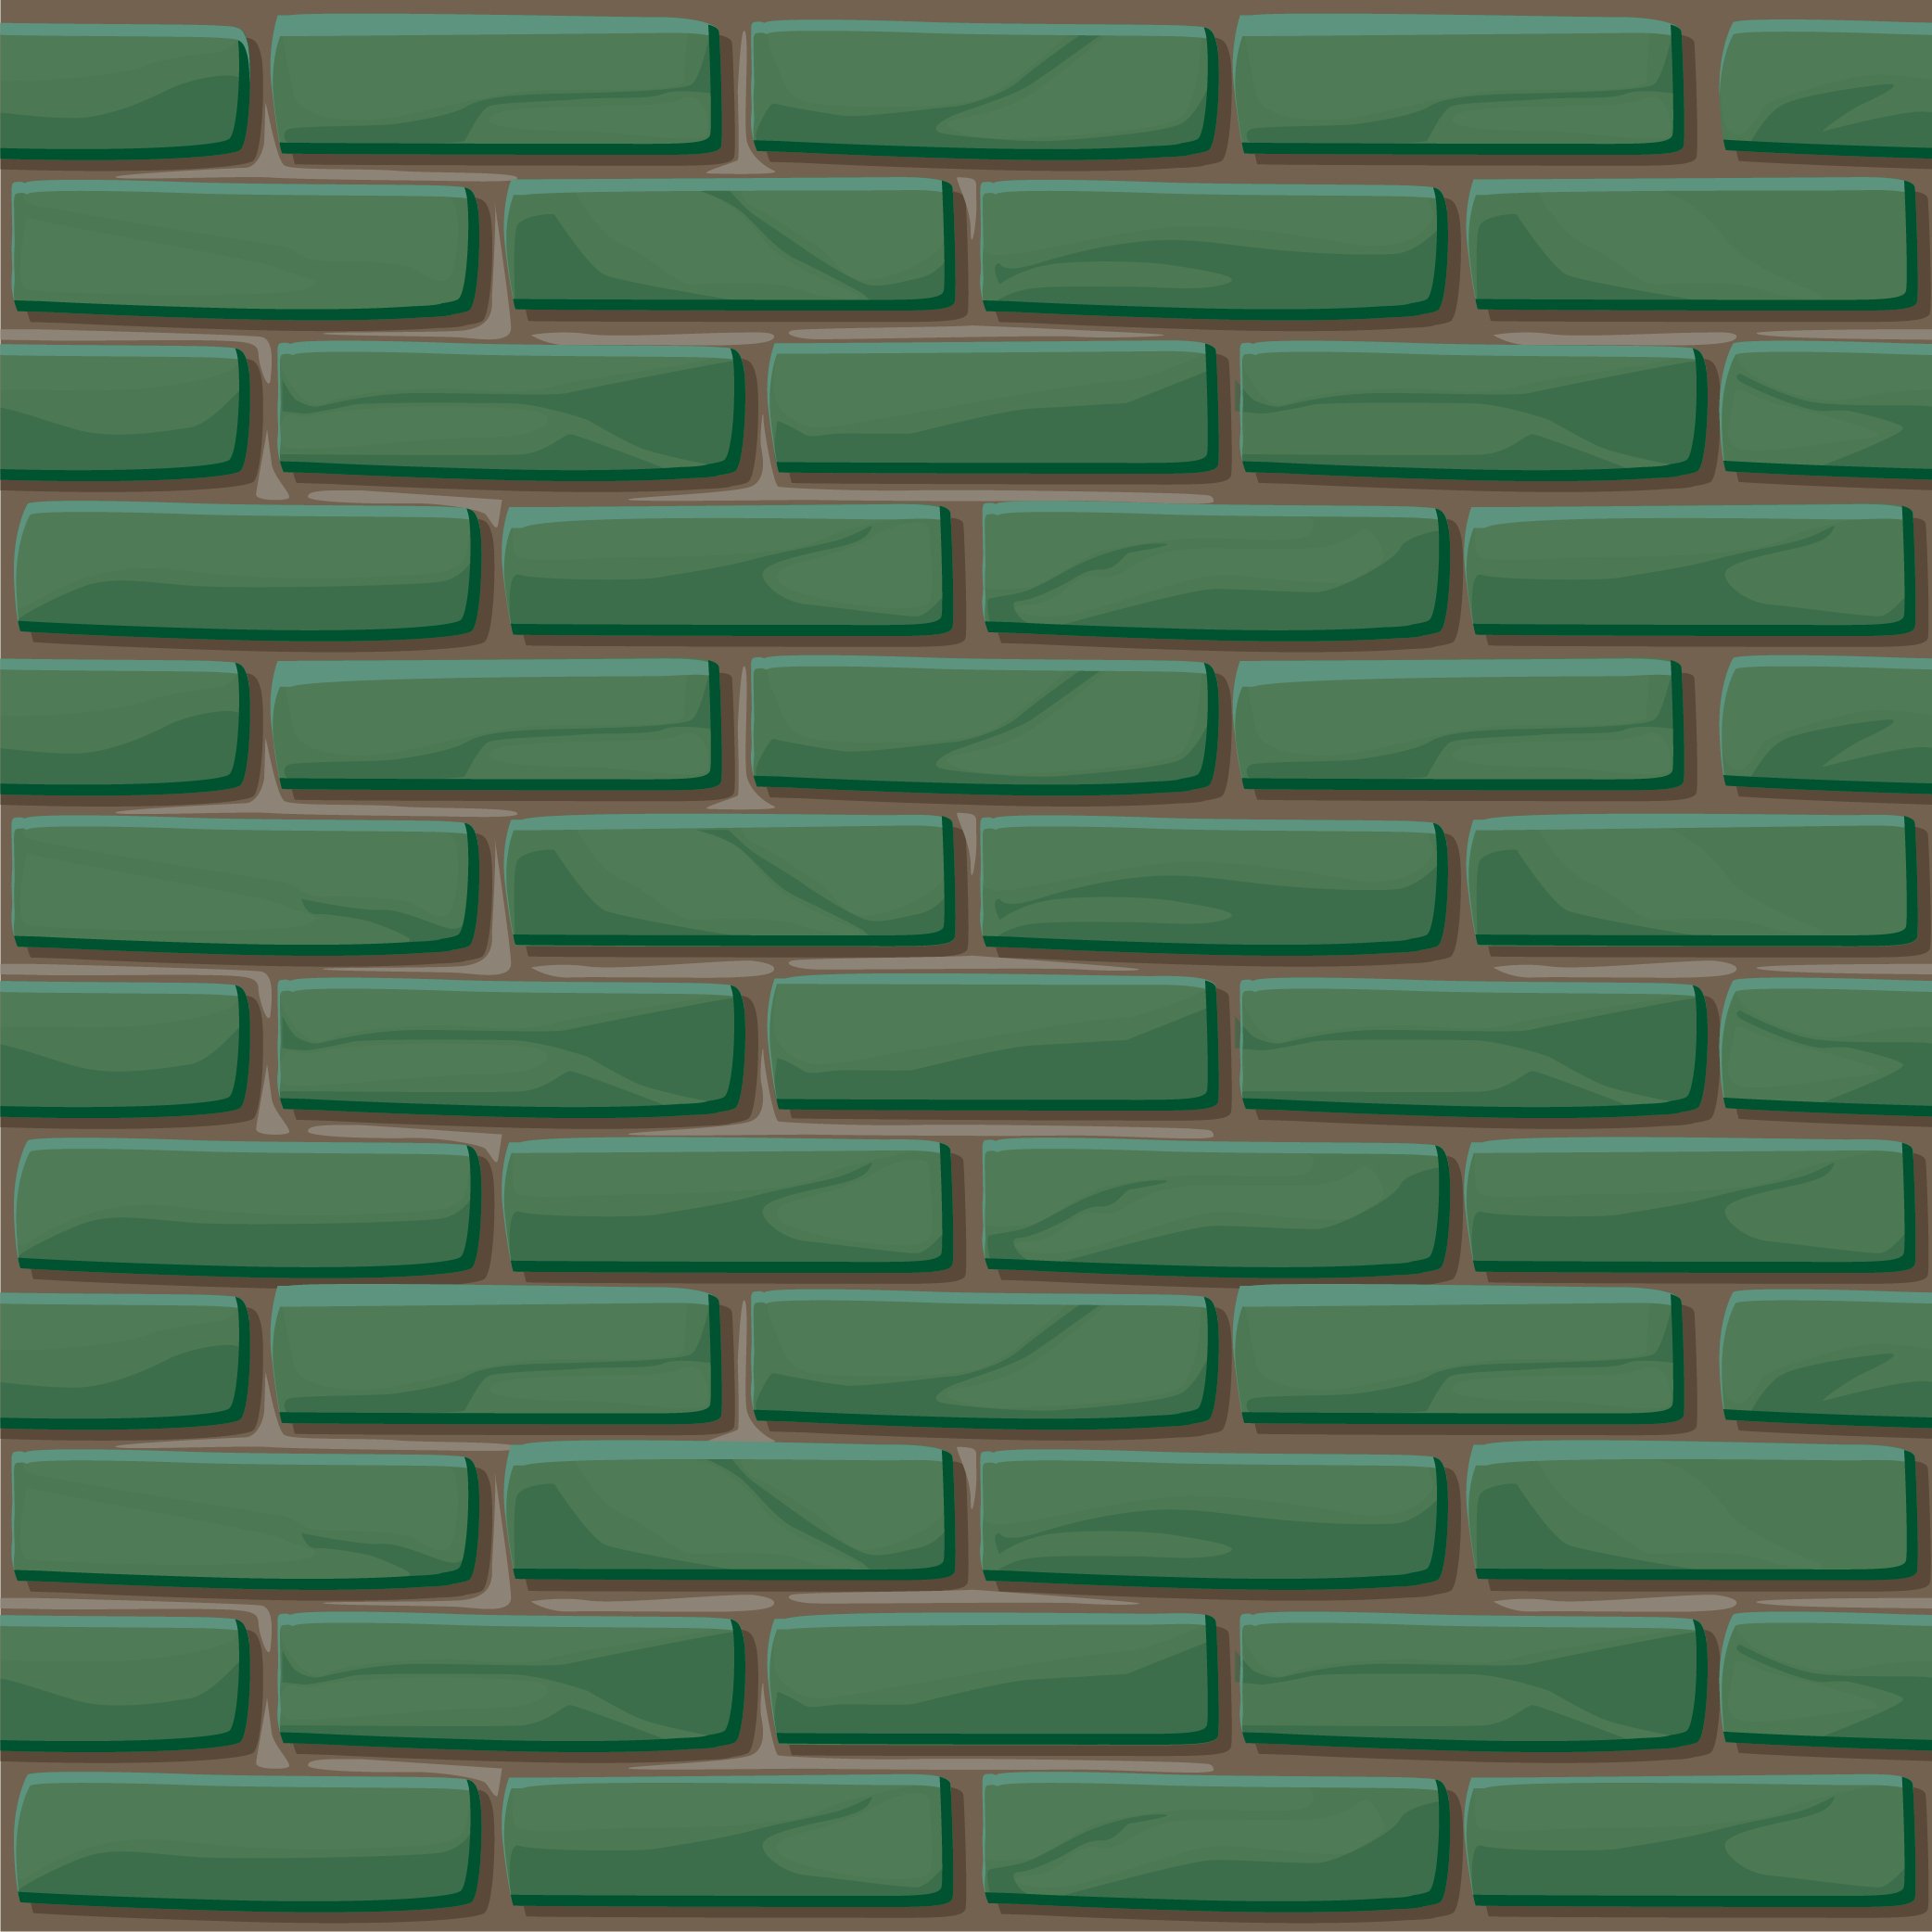 brick wall6 01 24